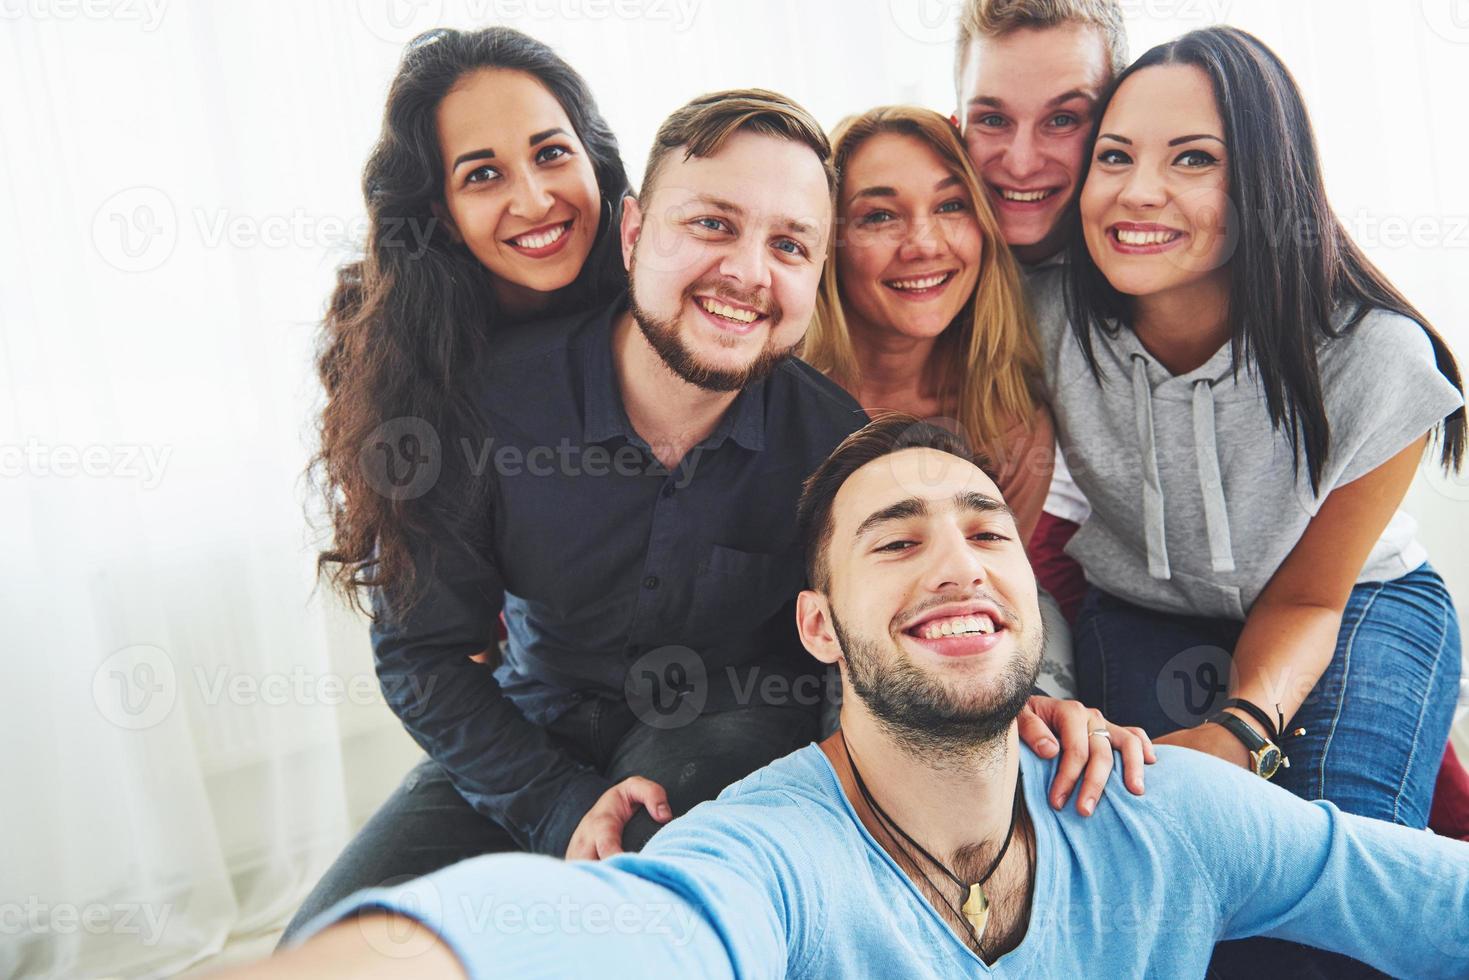 beste vrienden nemen selfie buitenshuis met achtergrondverlichting - gelukkig vriendschapsconcept met jonge mensen die samen plezier hebben foto